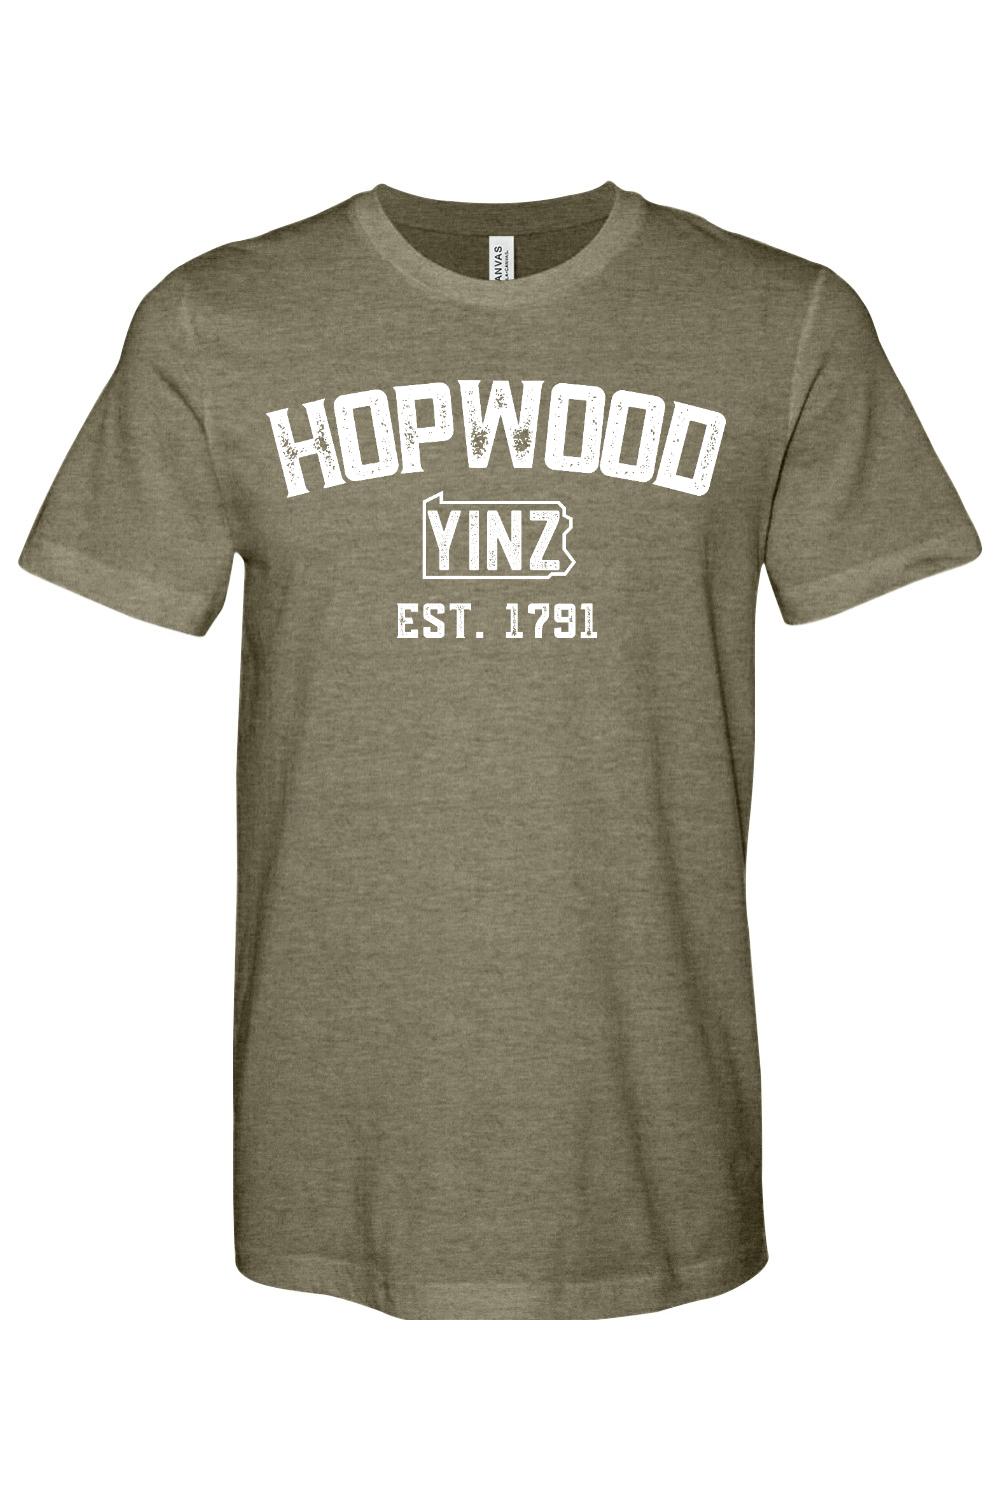 Hopwood Yinzylvania - Yinzylvania